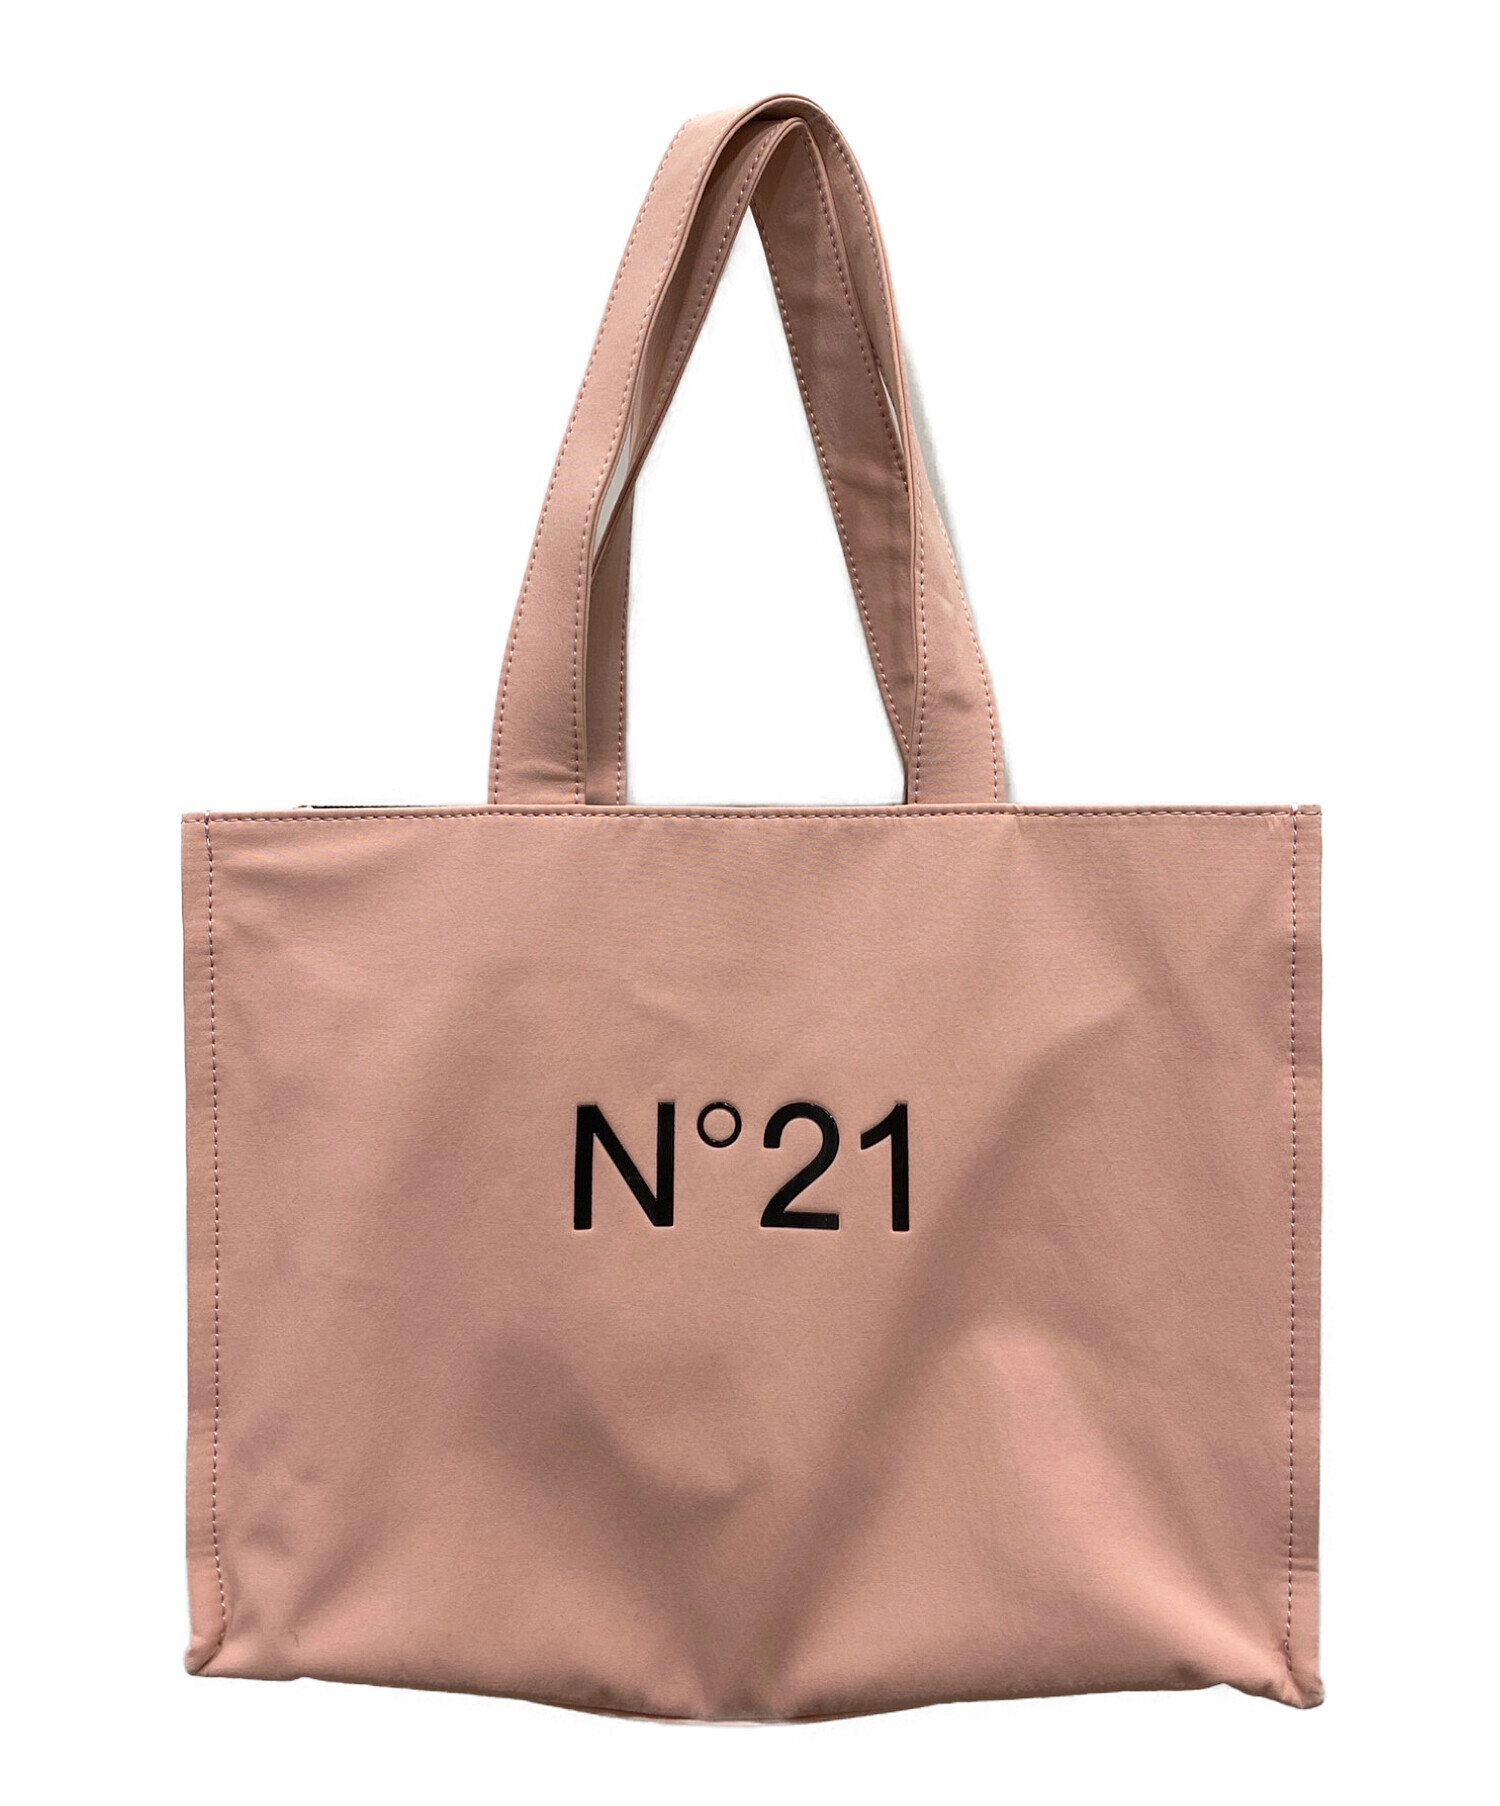 N°21 (ヌメロヴェントゥーノ) ロゴトートバッグ ピンク